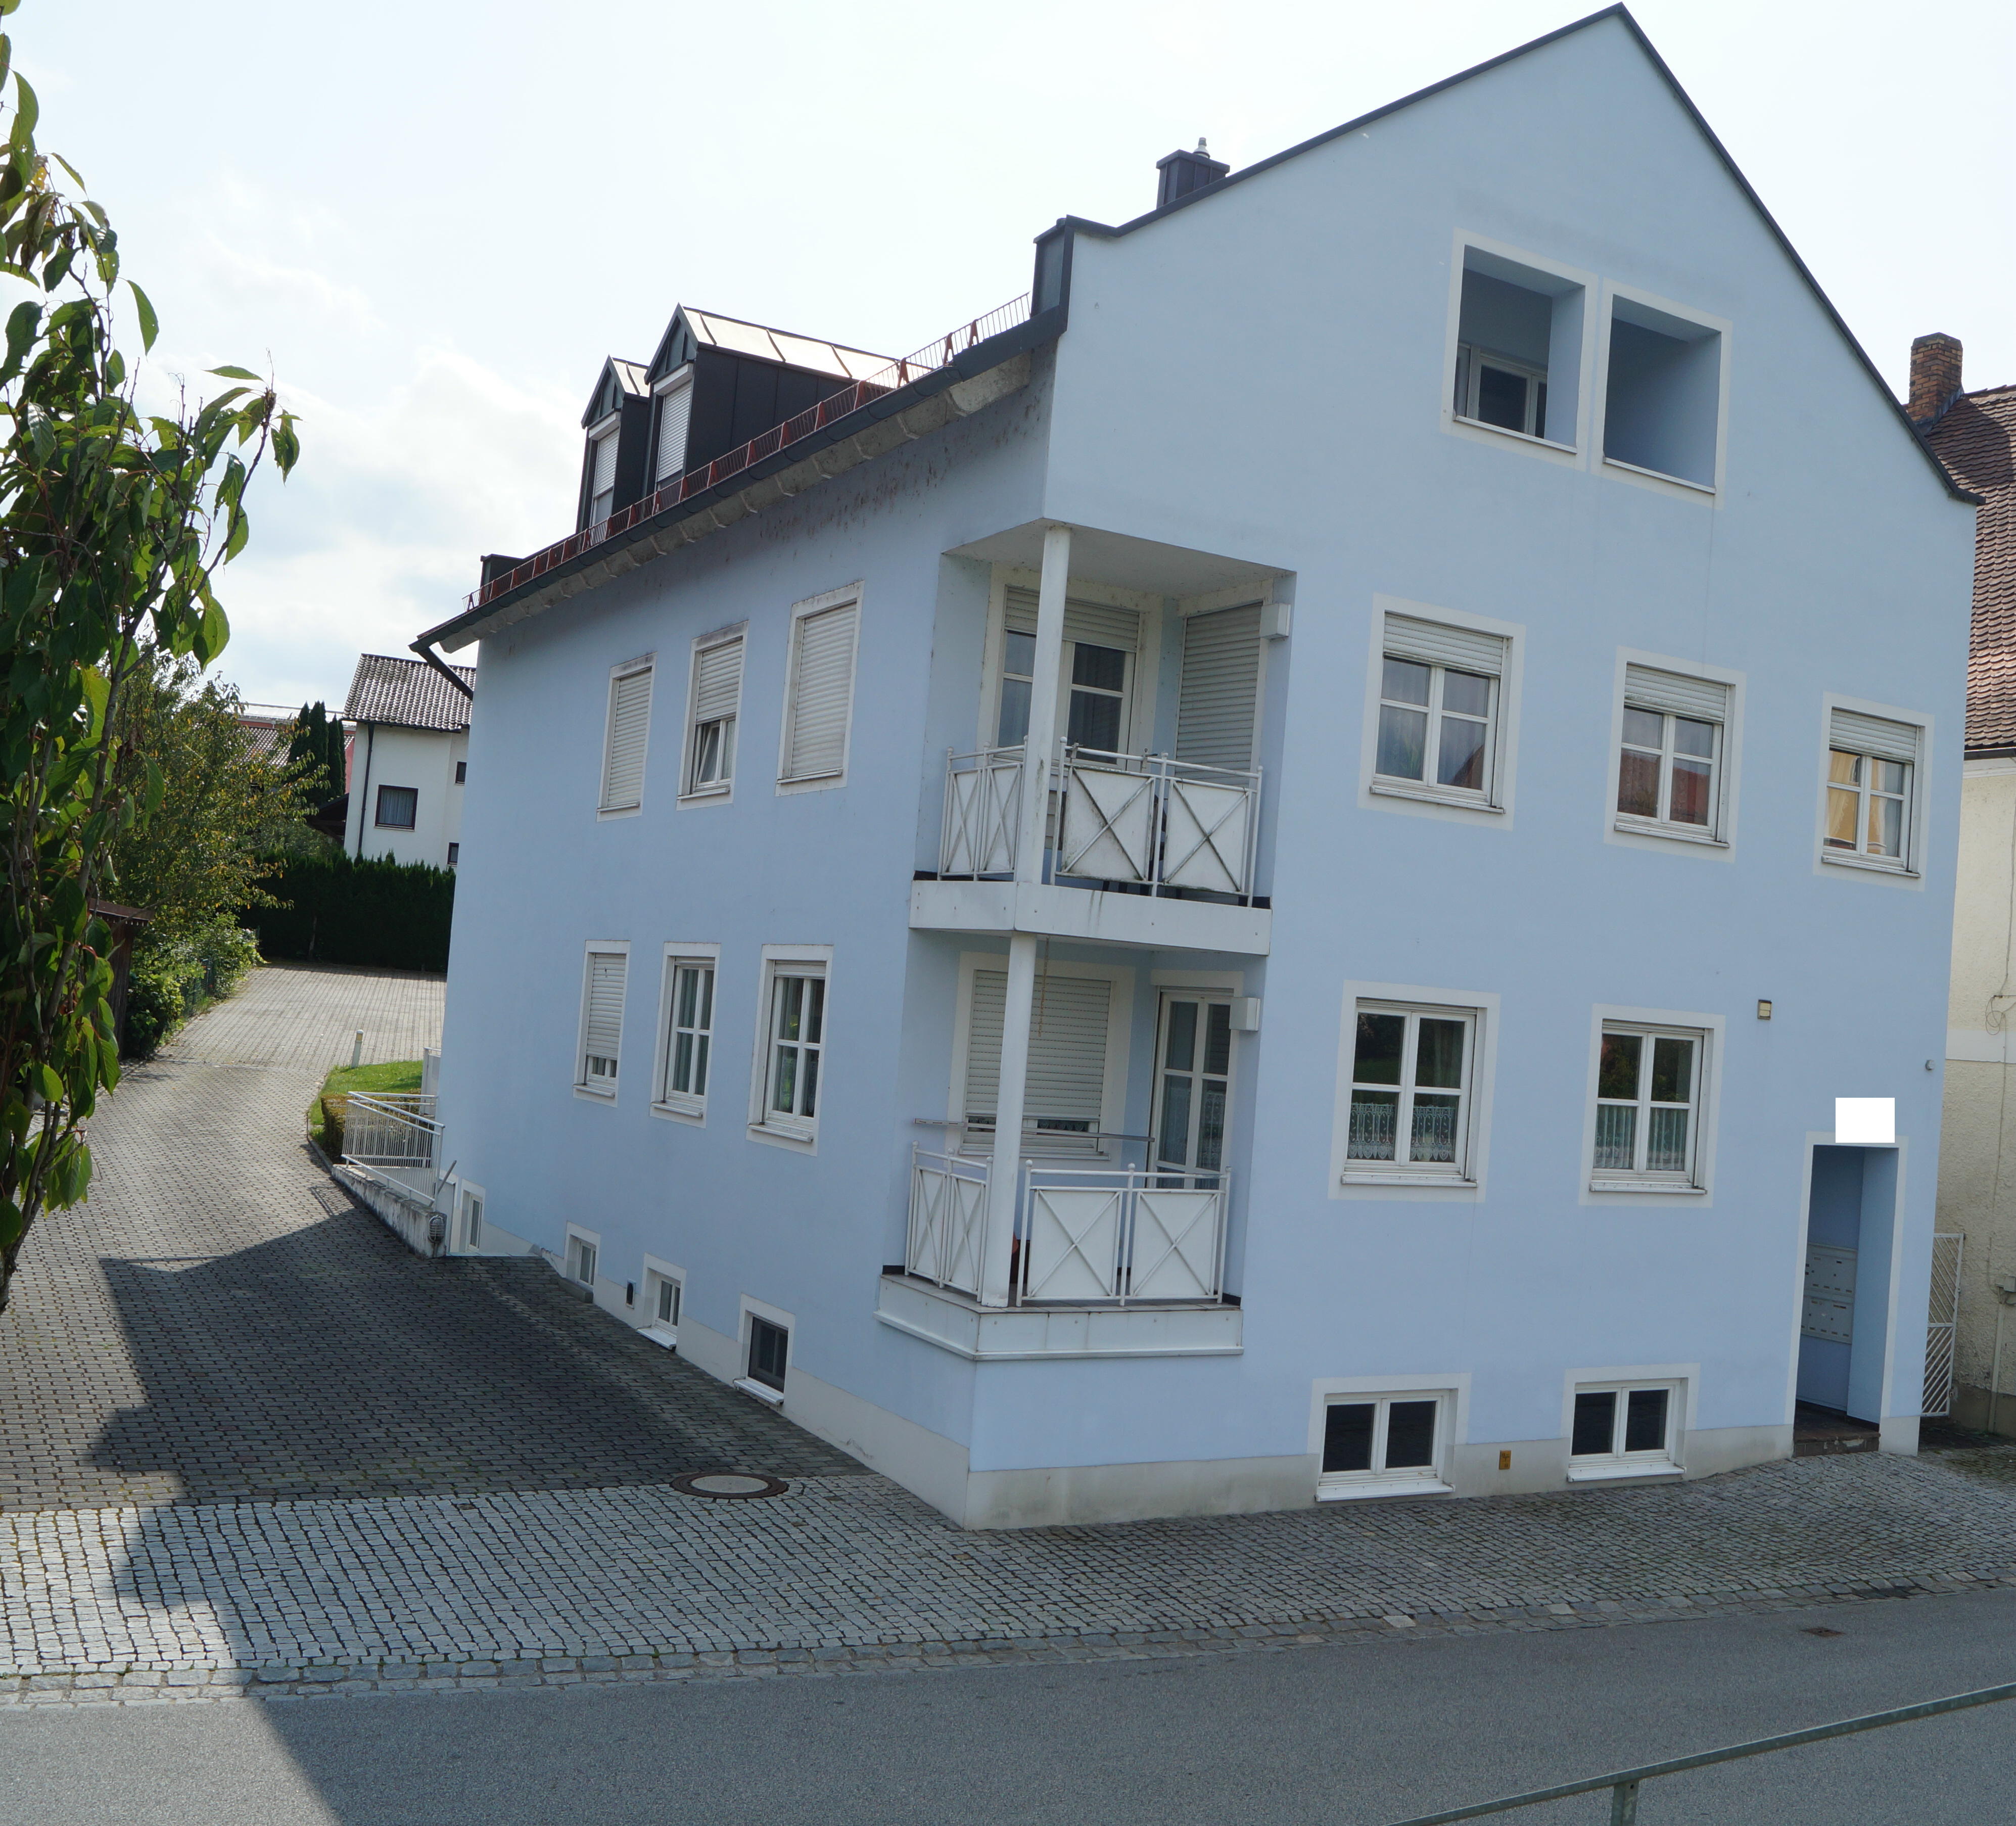 2-Zimmer ETW in Vilshofen<br><br>Verkauft in 8 Tagen